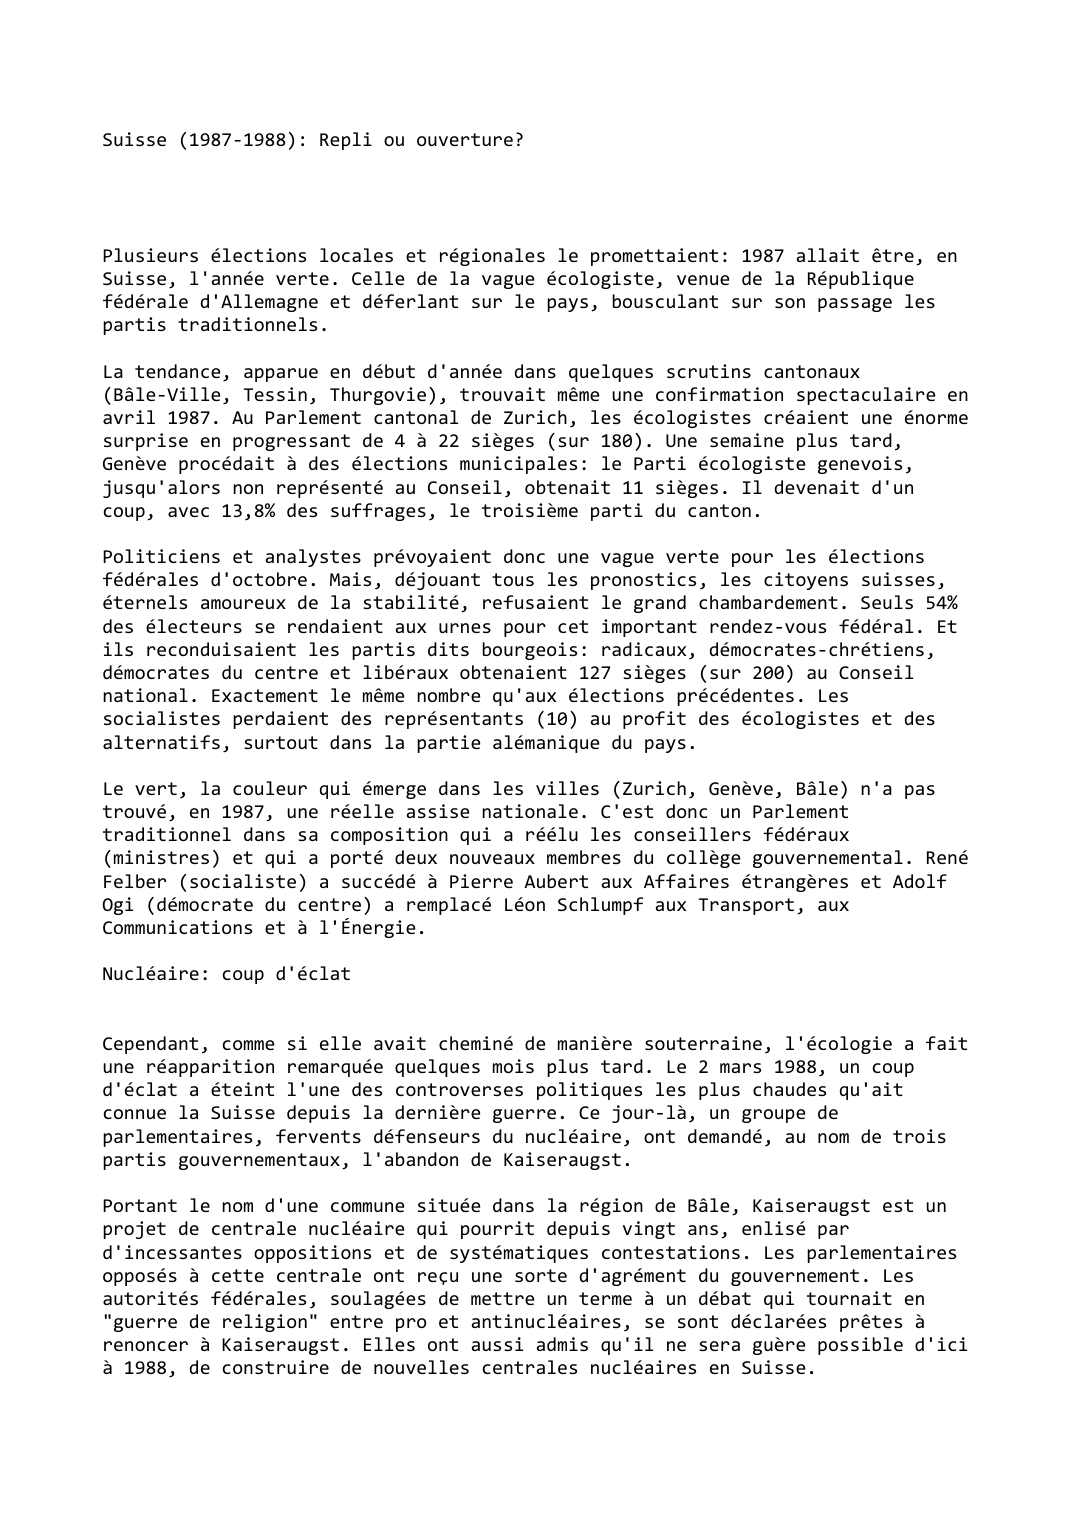 Prévisualisation du document Suisse (1987-1988): Repli ou ouverture?